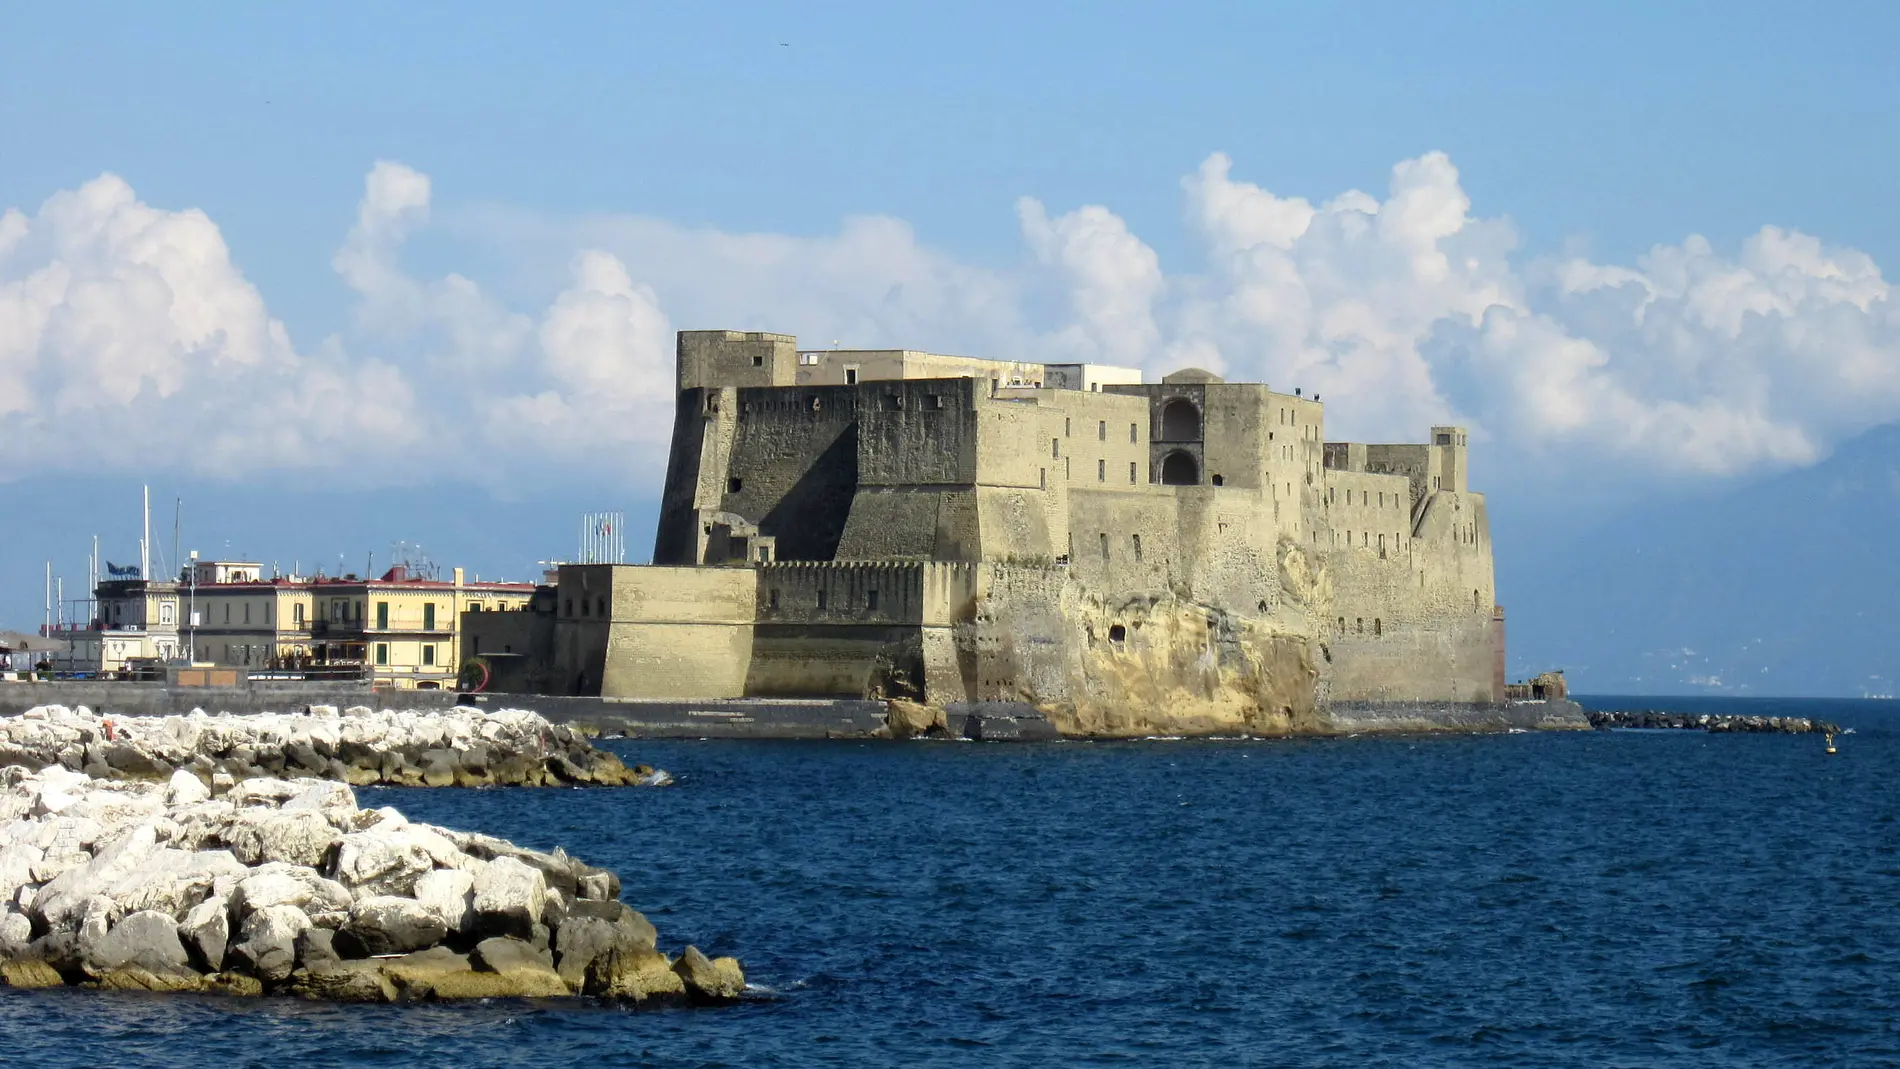 Castel del Ovo, en Nápoles, el castillo que rindió la flota de Galcerán de Requesens frente a los franceses